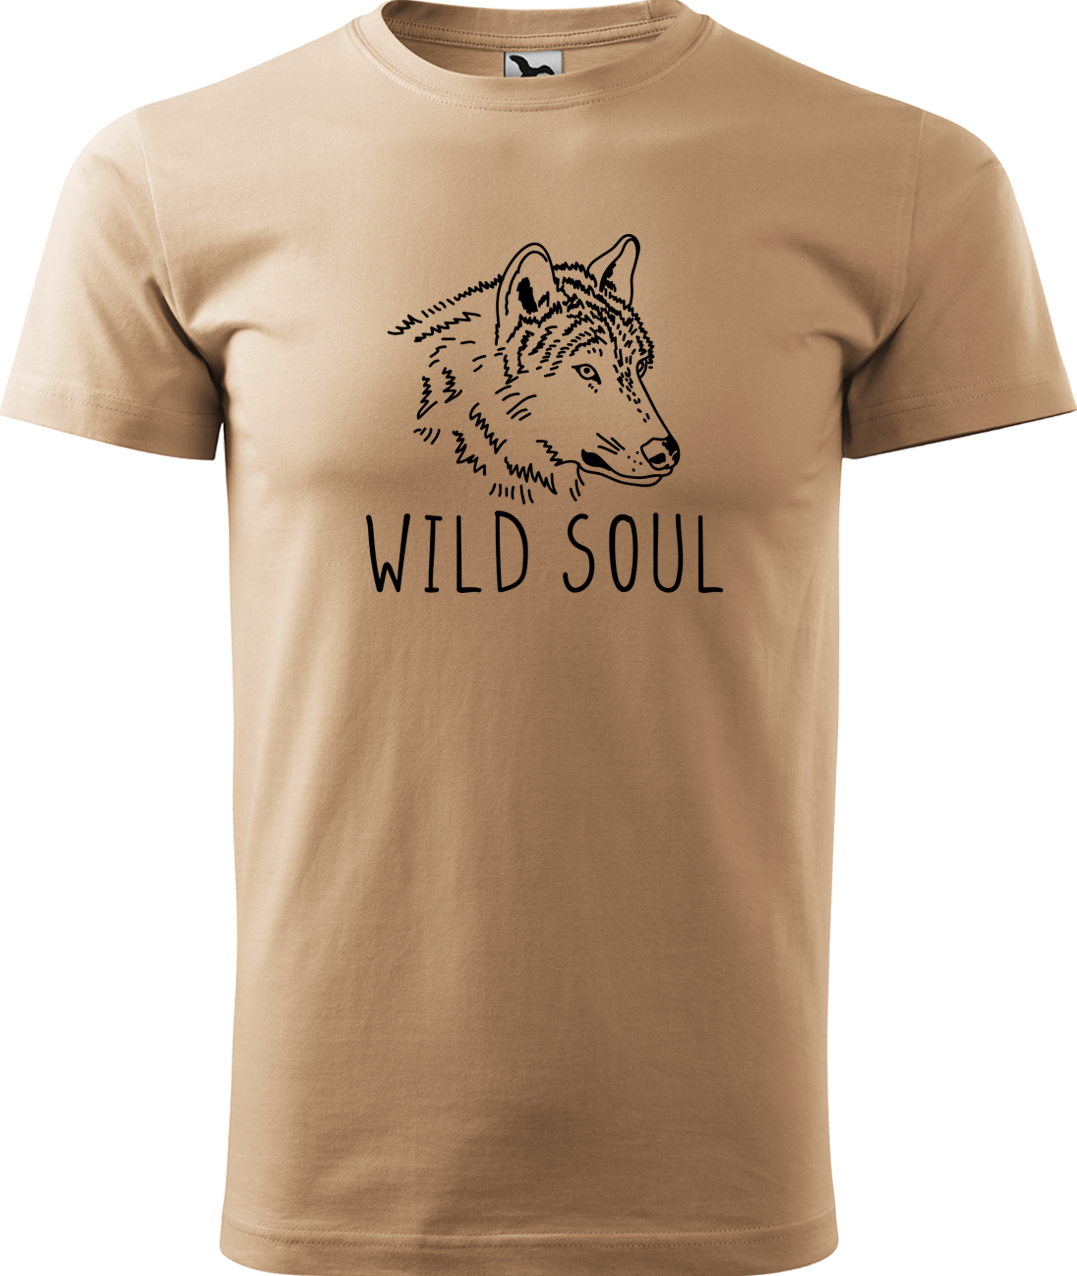 Pánské tričko s vlkem - Wild soul Velikost: 4XL, Barva: Písková (08), Střih: pánský